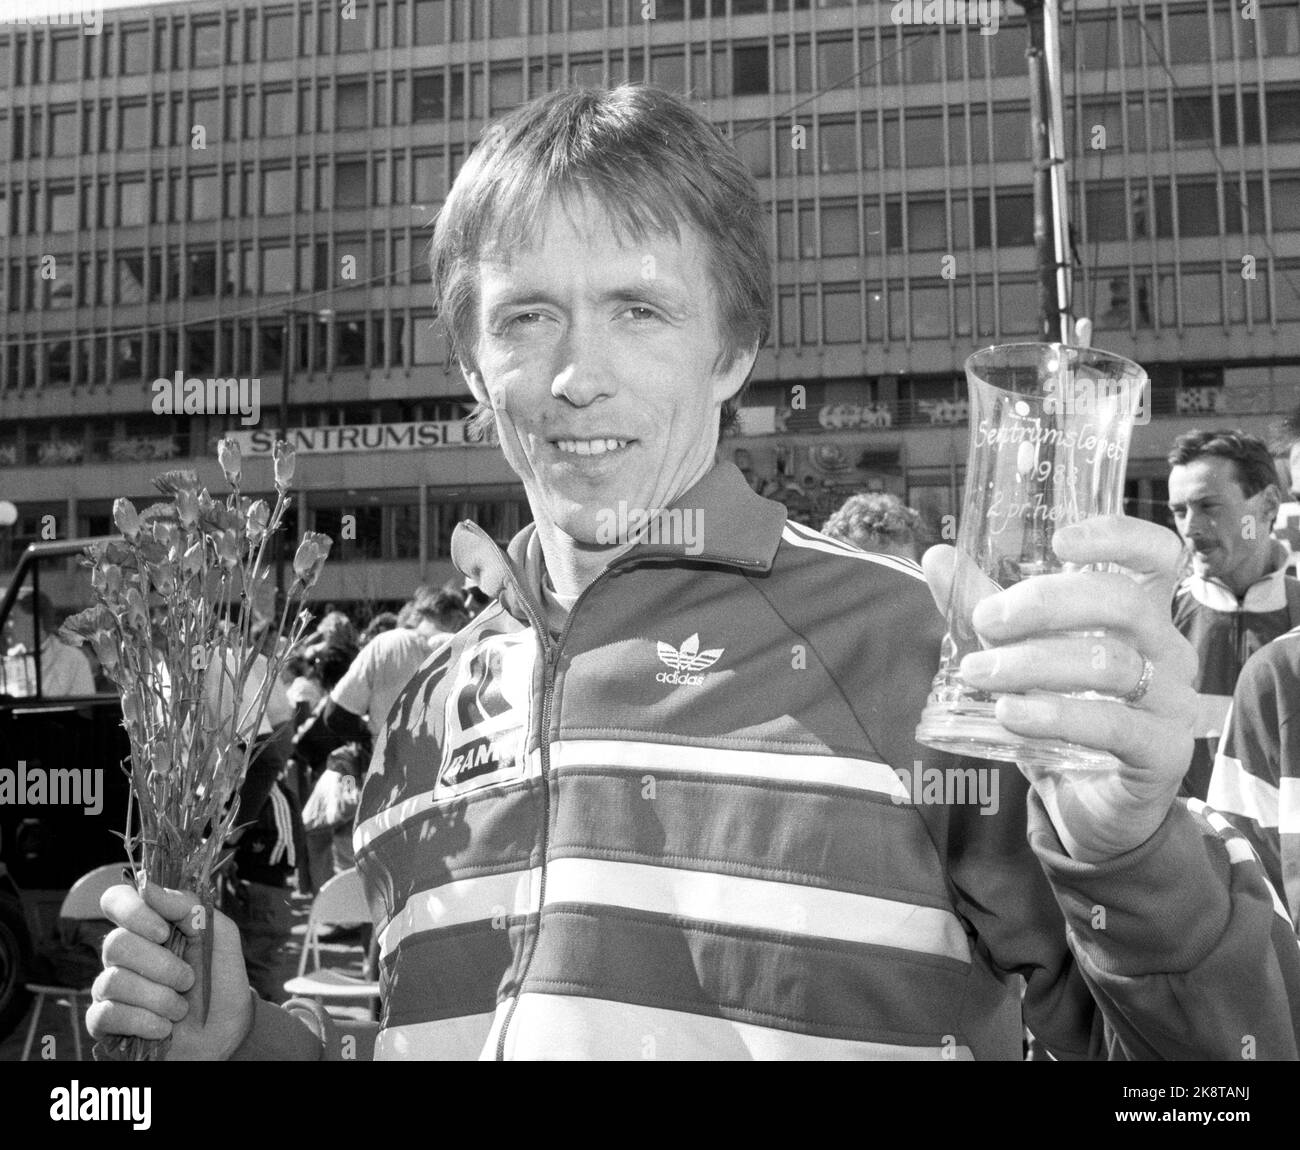 Oslo 19880424 Geir Kvernmo wurde mit seinem zweiten Platz in der Elite-Klasse der beste Norweger im Mittelrennen. Foto: Eystein Hanssen / NTB. Physische Loks: NTB NEG 19774 A Stockfoto